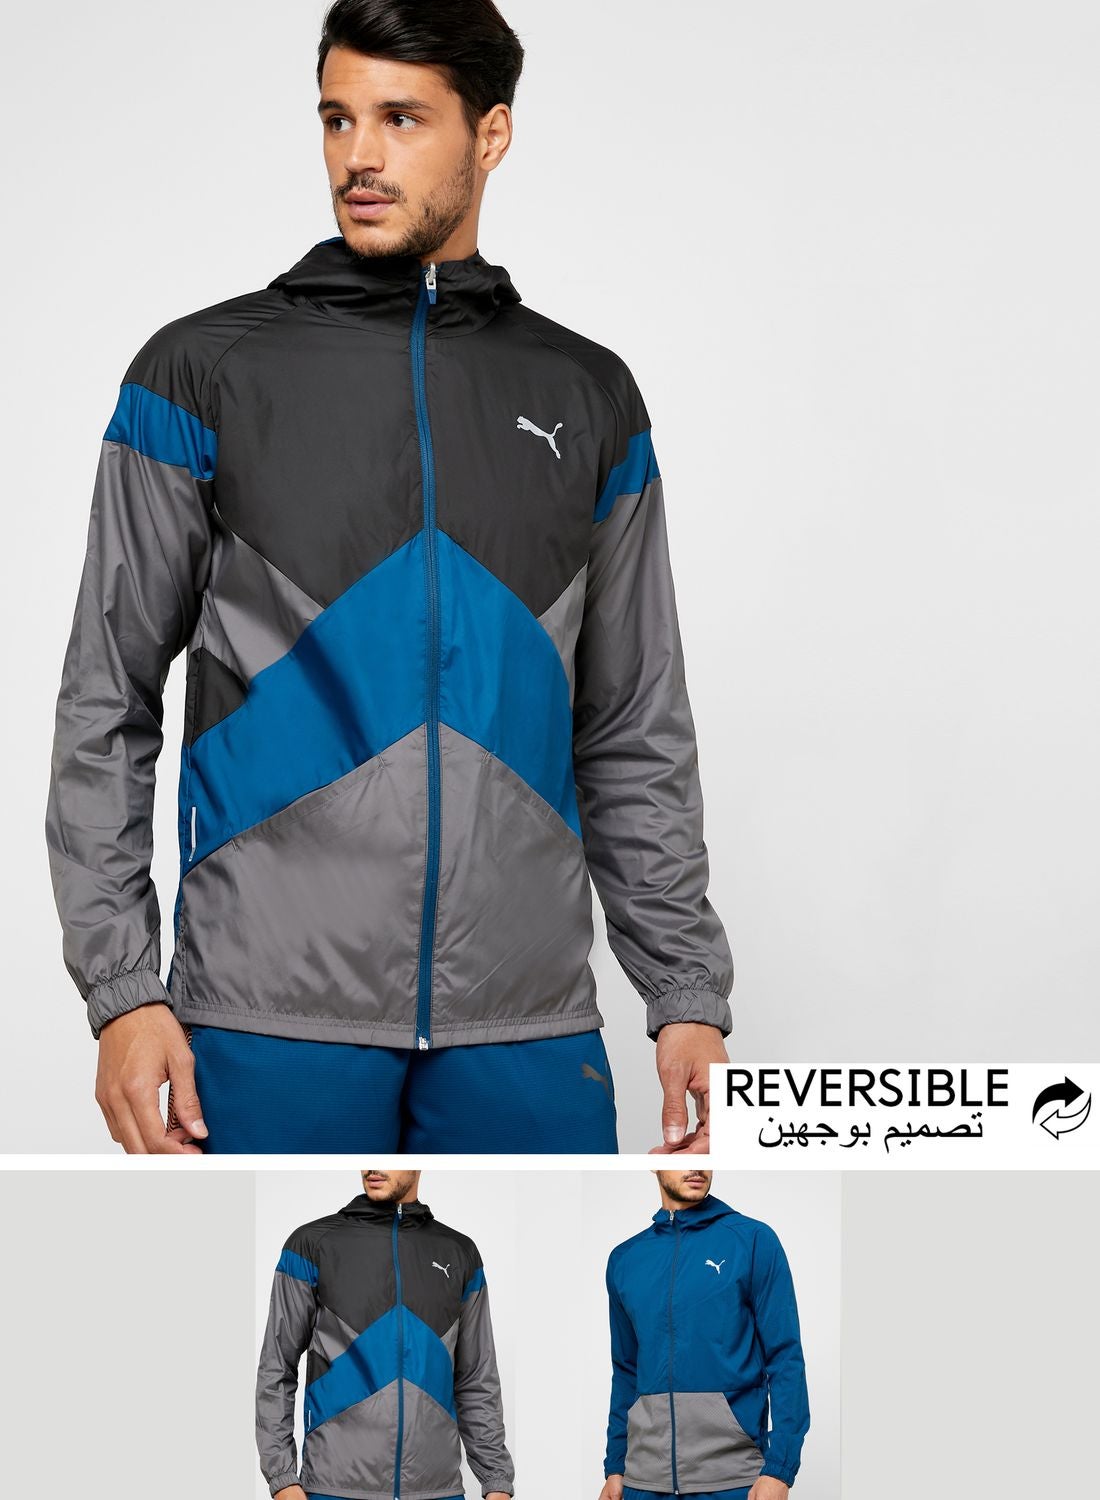 Reactive Men's Reversible Jacket